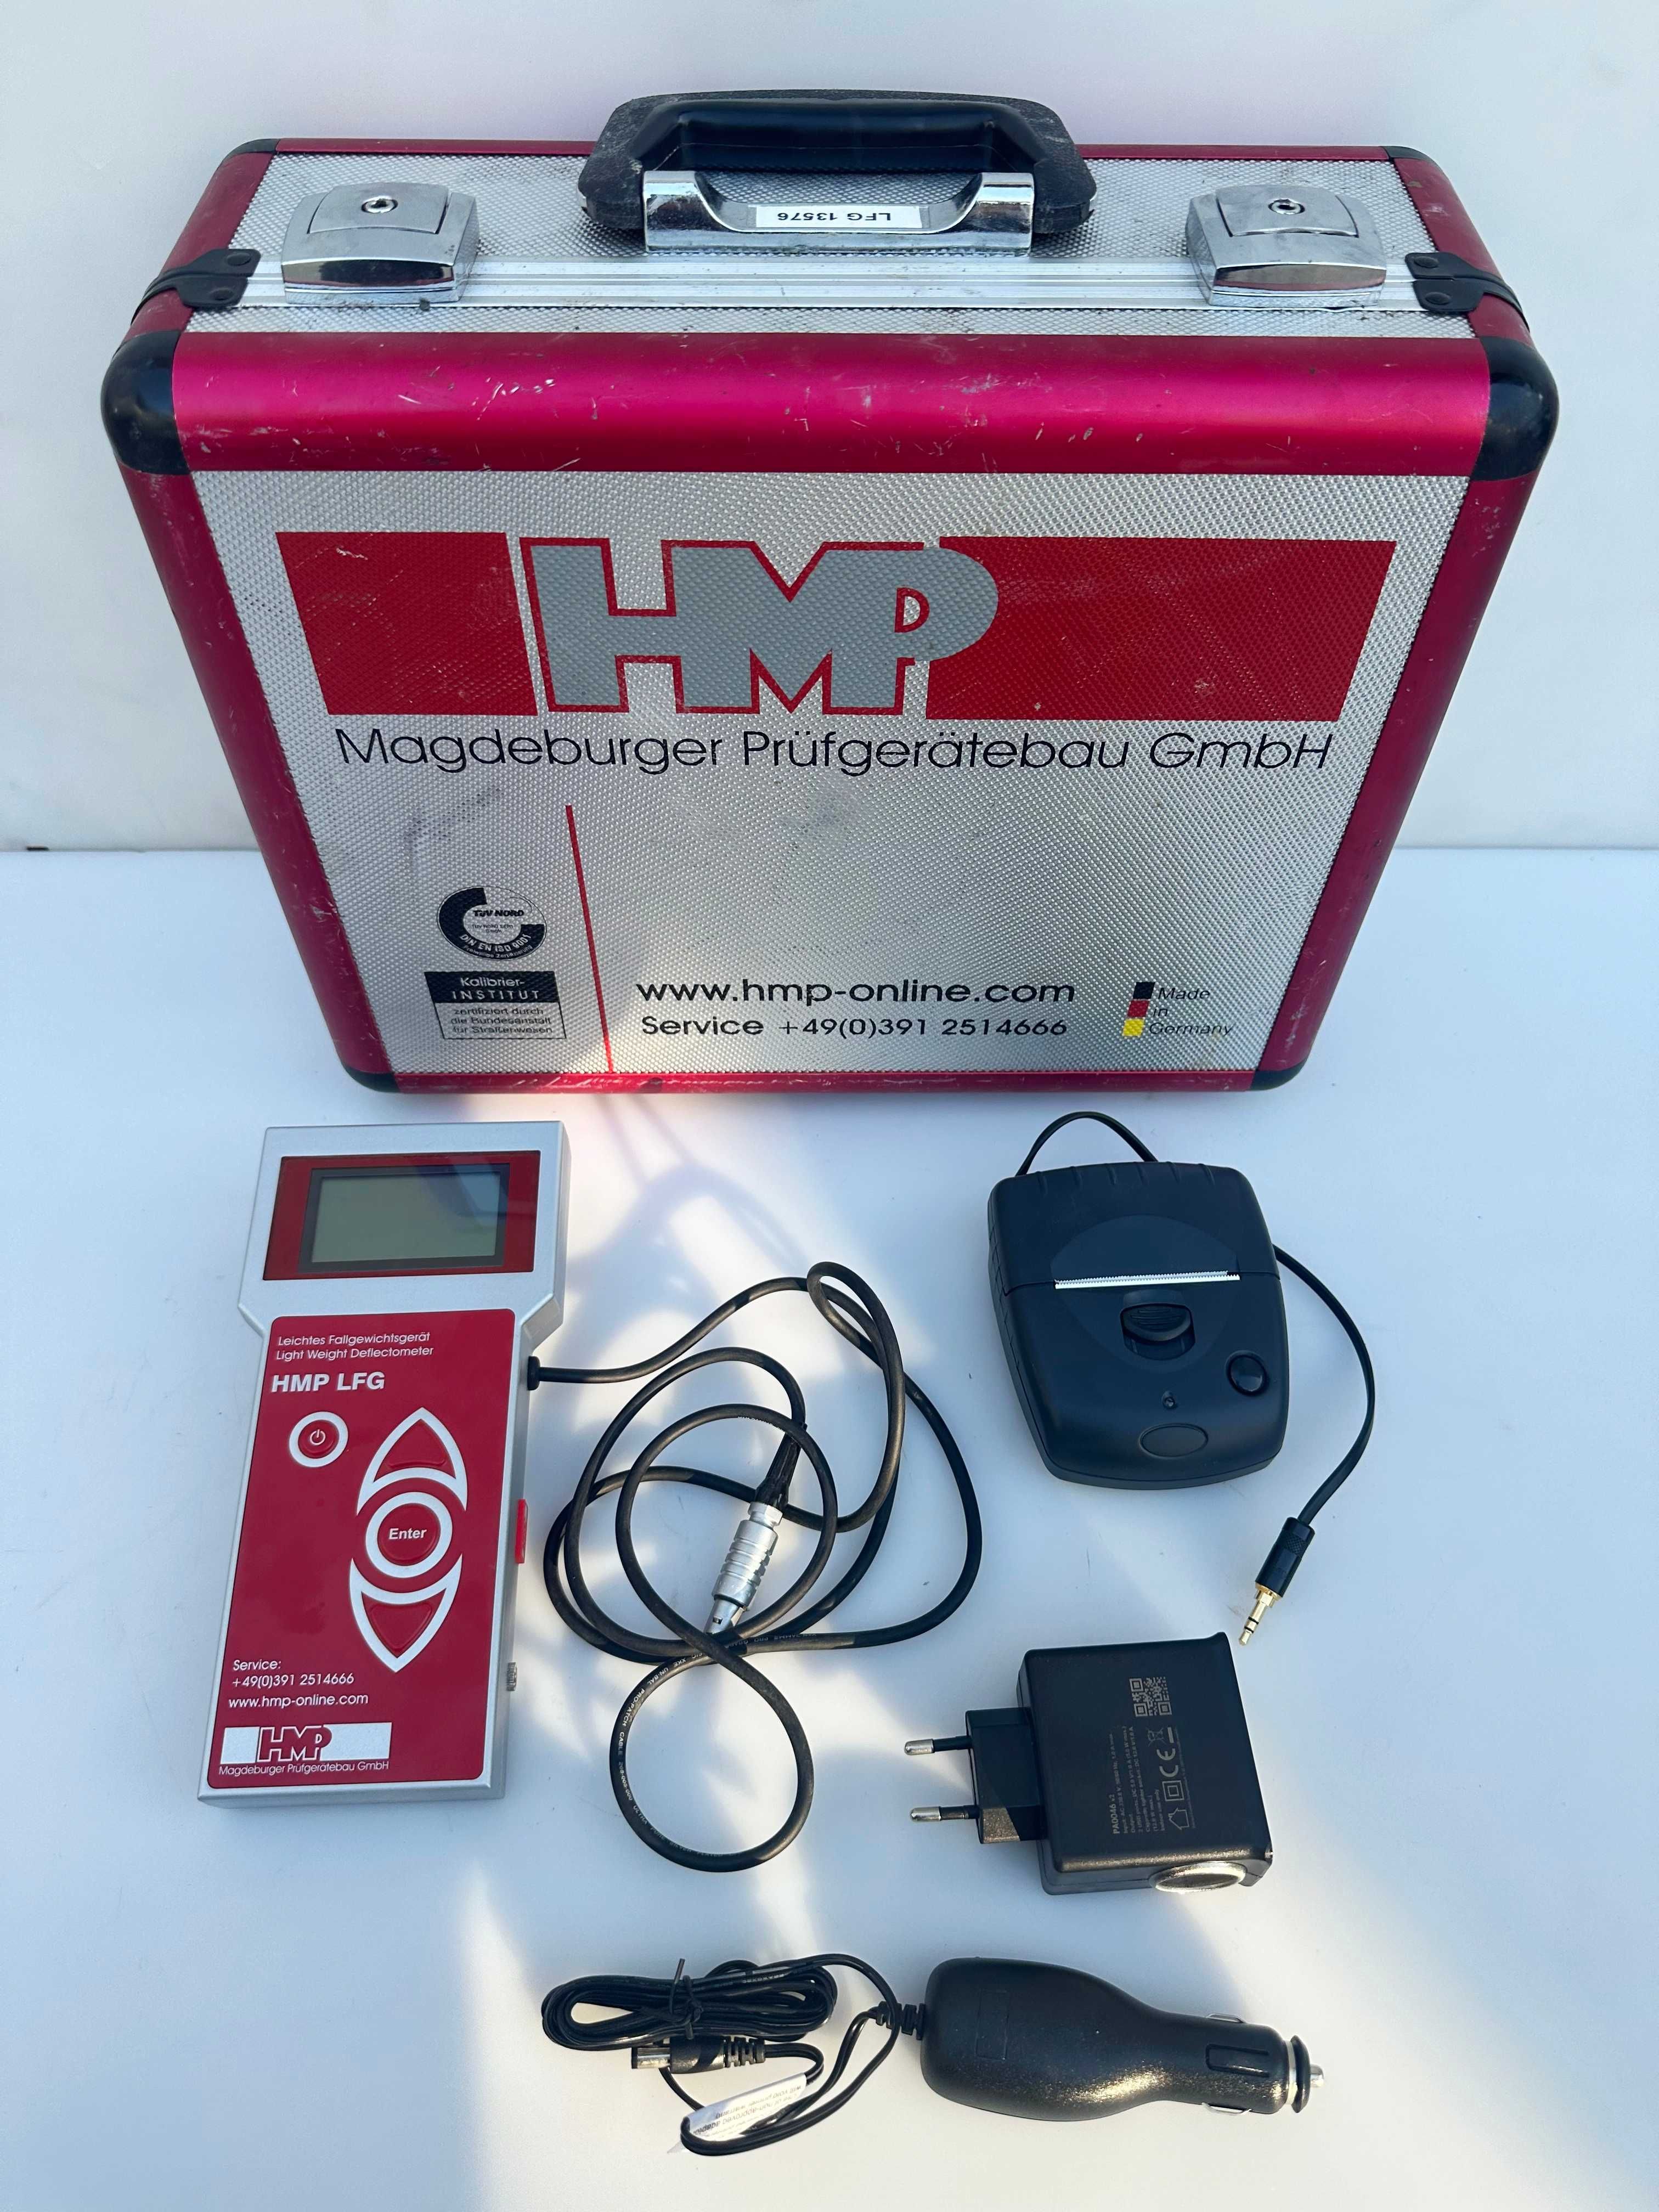 HMP LFG4 - Компактен дефлектометър (тестер за падащо тегло)